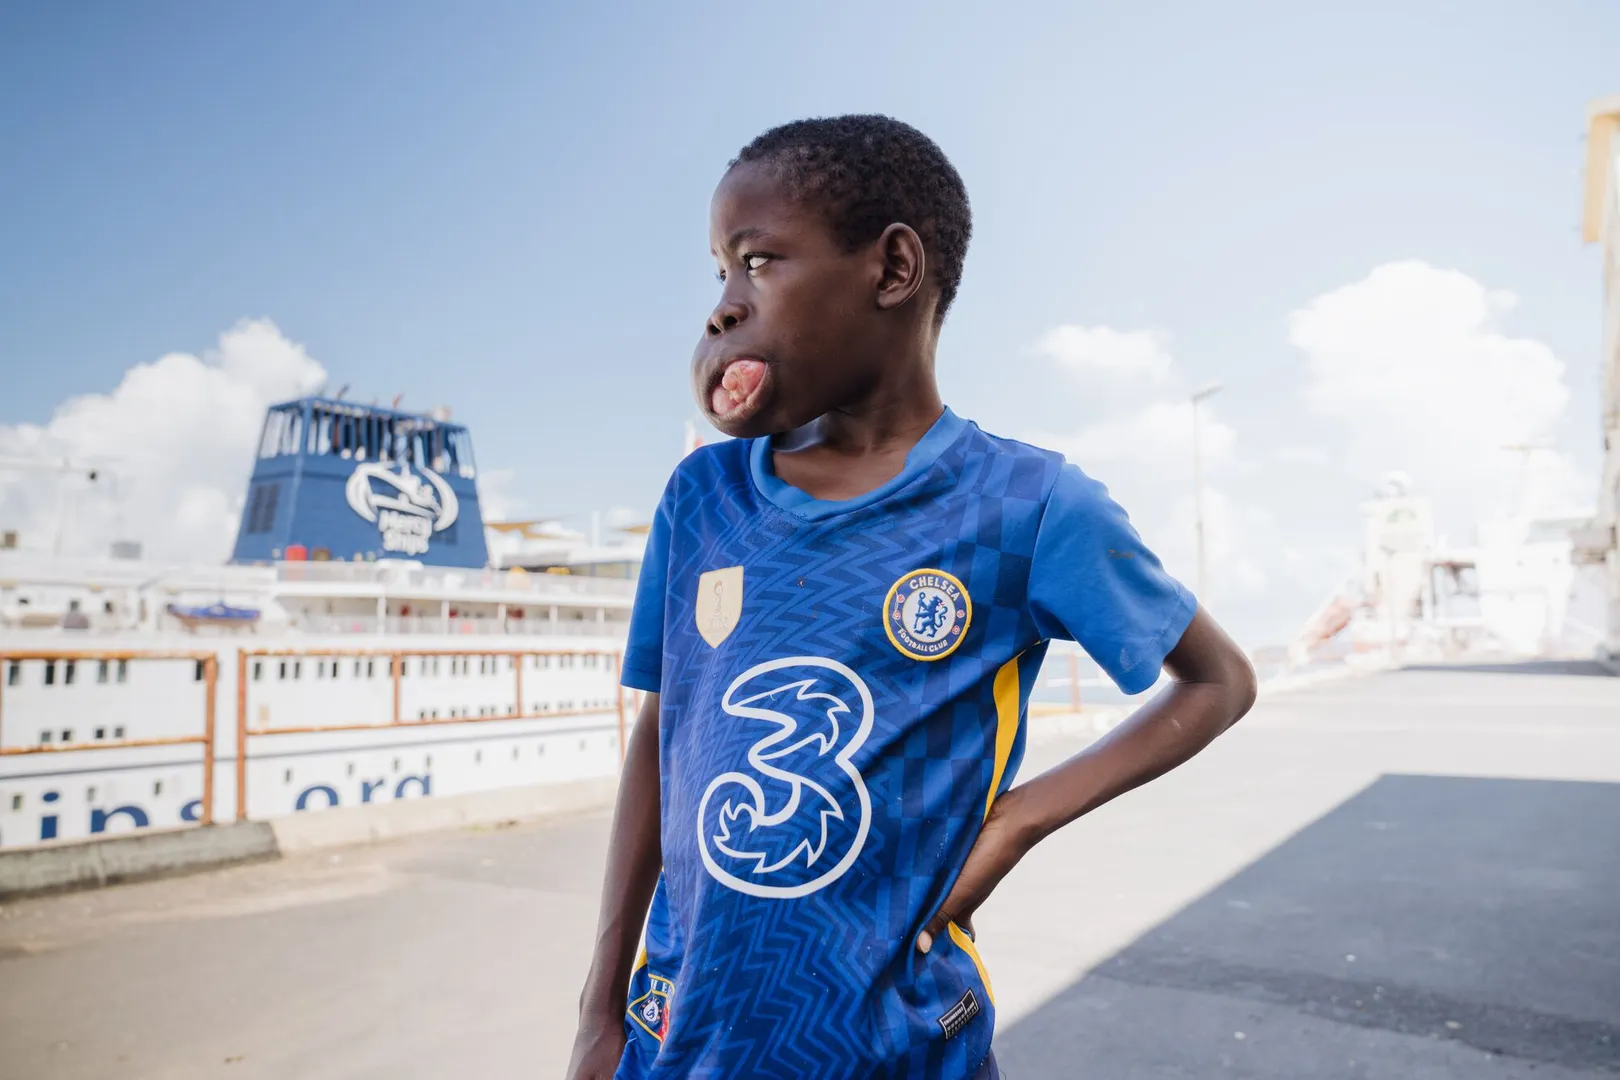 Un garçon de 13 ans, en difficulté pour manger et parler à cause d'une tumeur, bénéficie d'une intervention chirurgicale qui va transformer sa vie au Sénégal